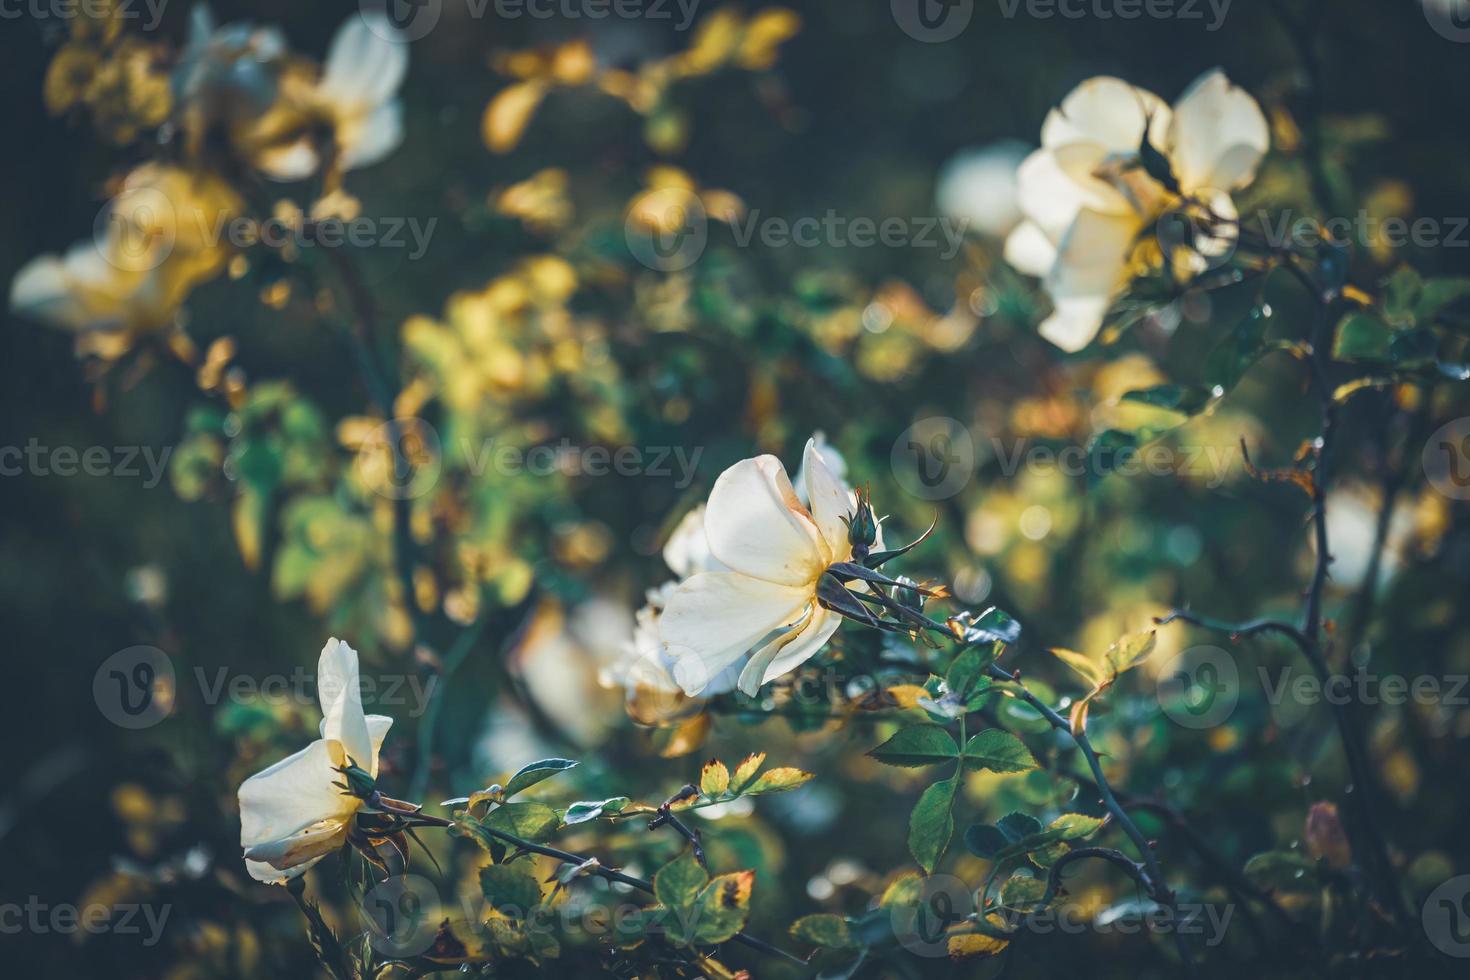 Blüten von Mini-Rosenbüschen foto